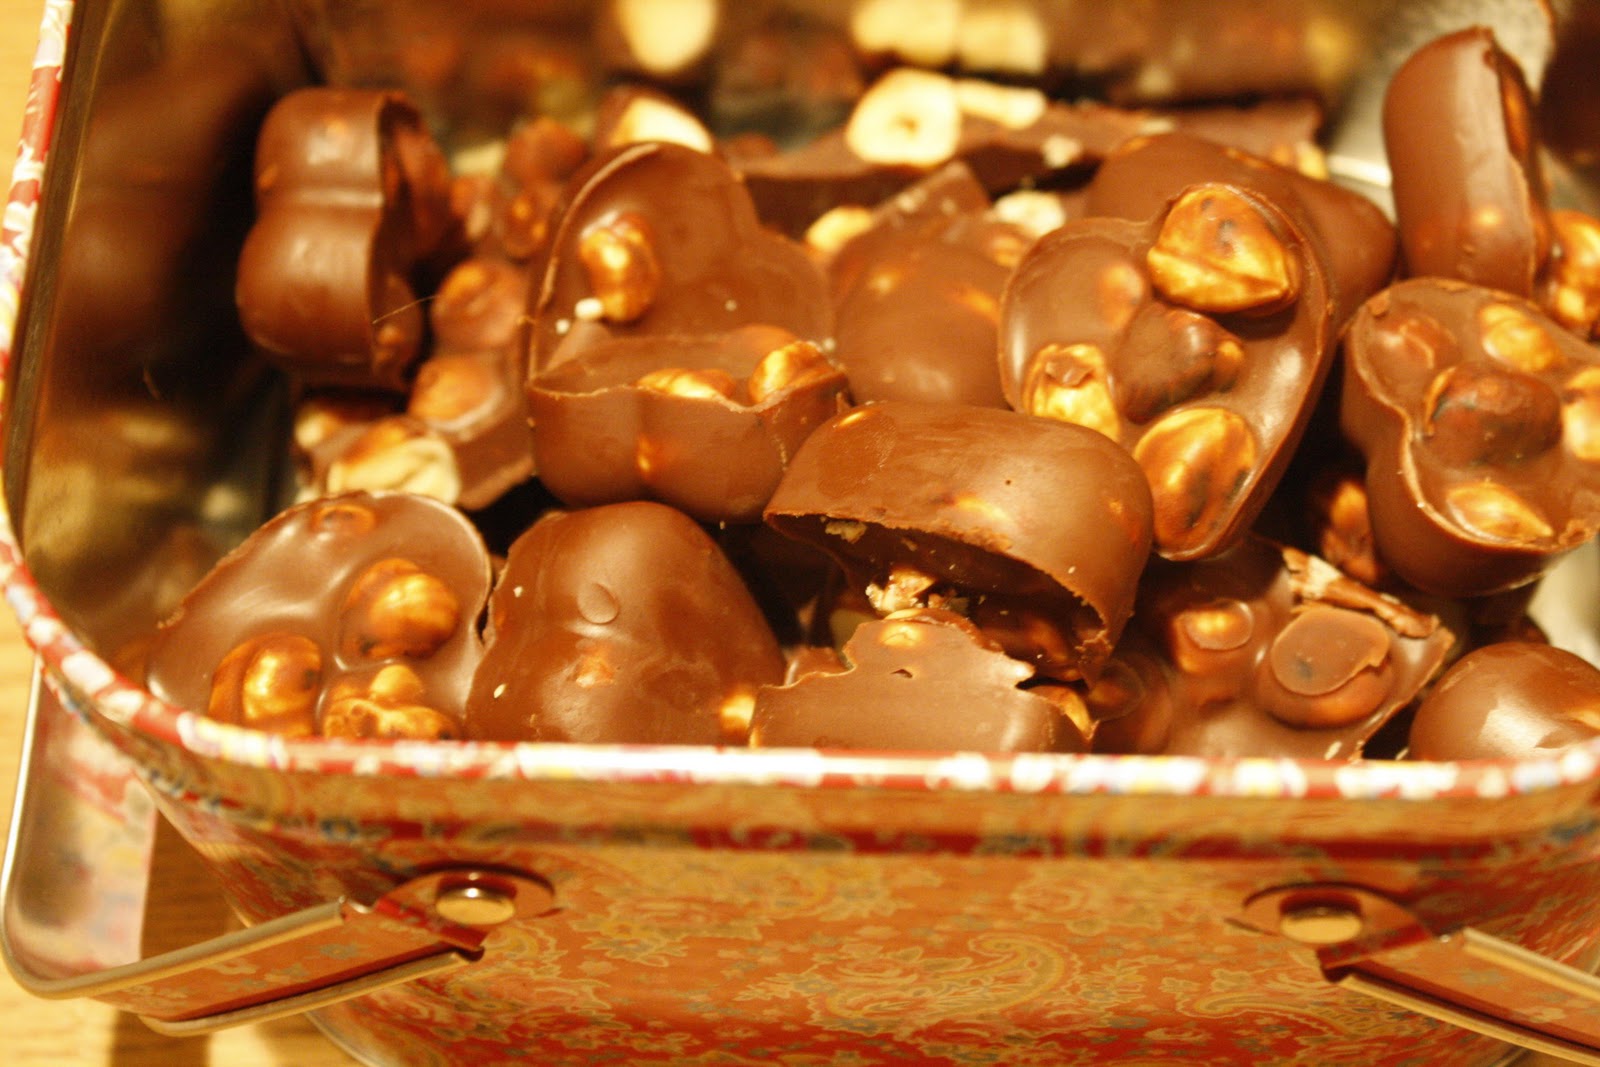 Gry´s lavkarbo: Sjokolade med hasselnøtt